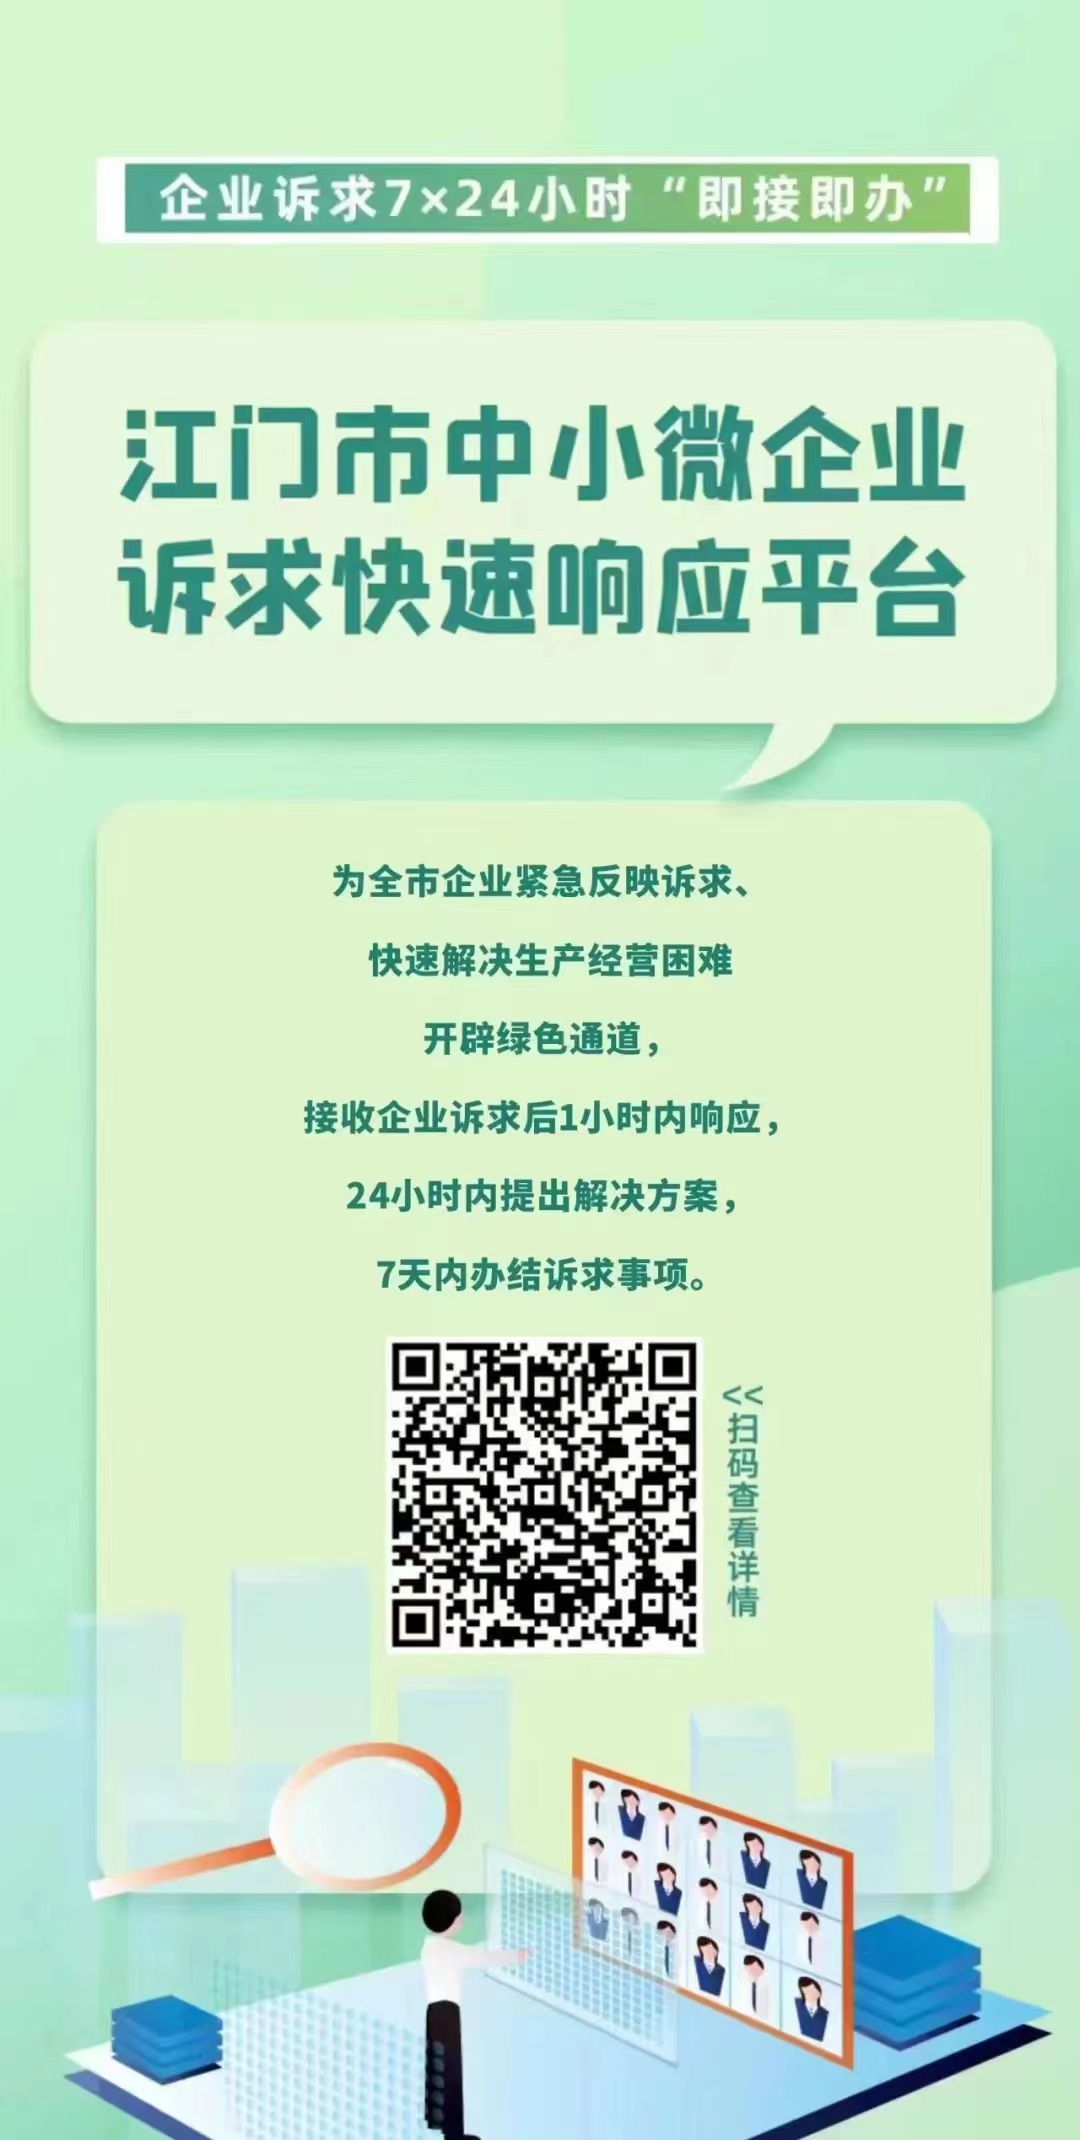 江门市中小微企业诉求快速响应平台.jpg